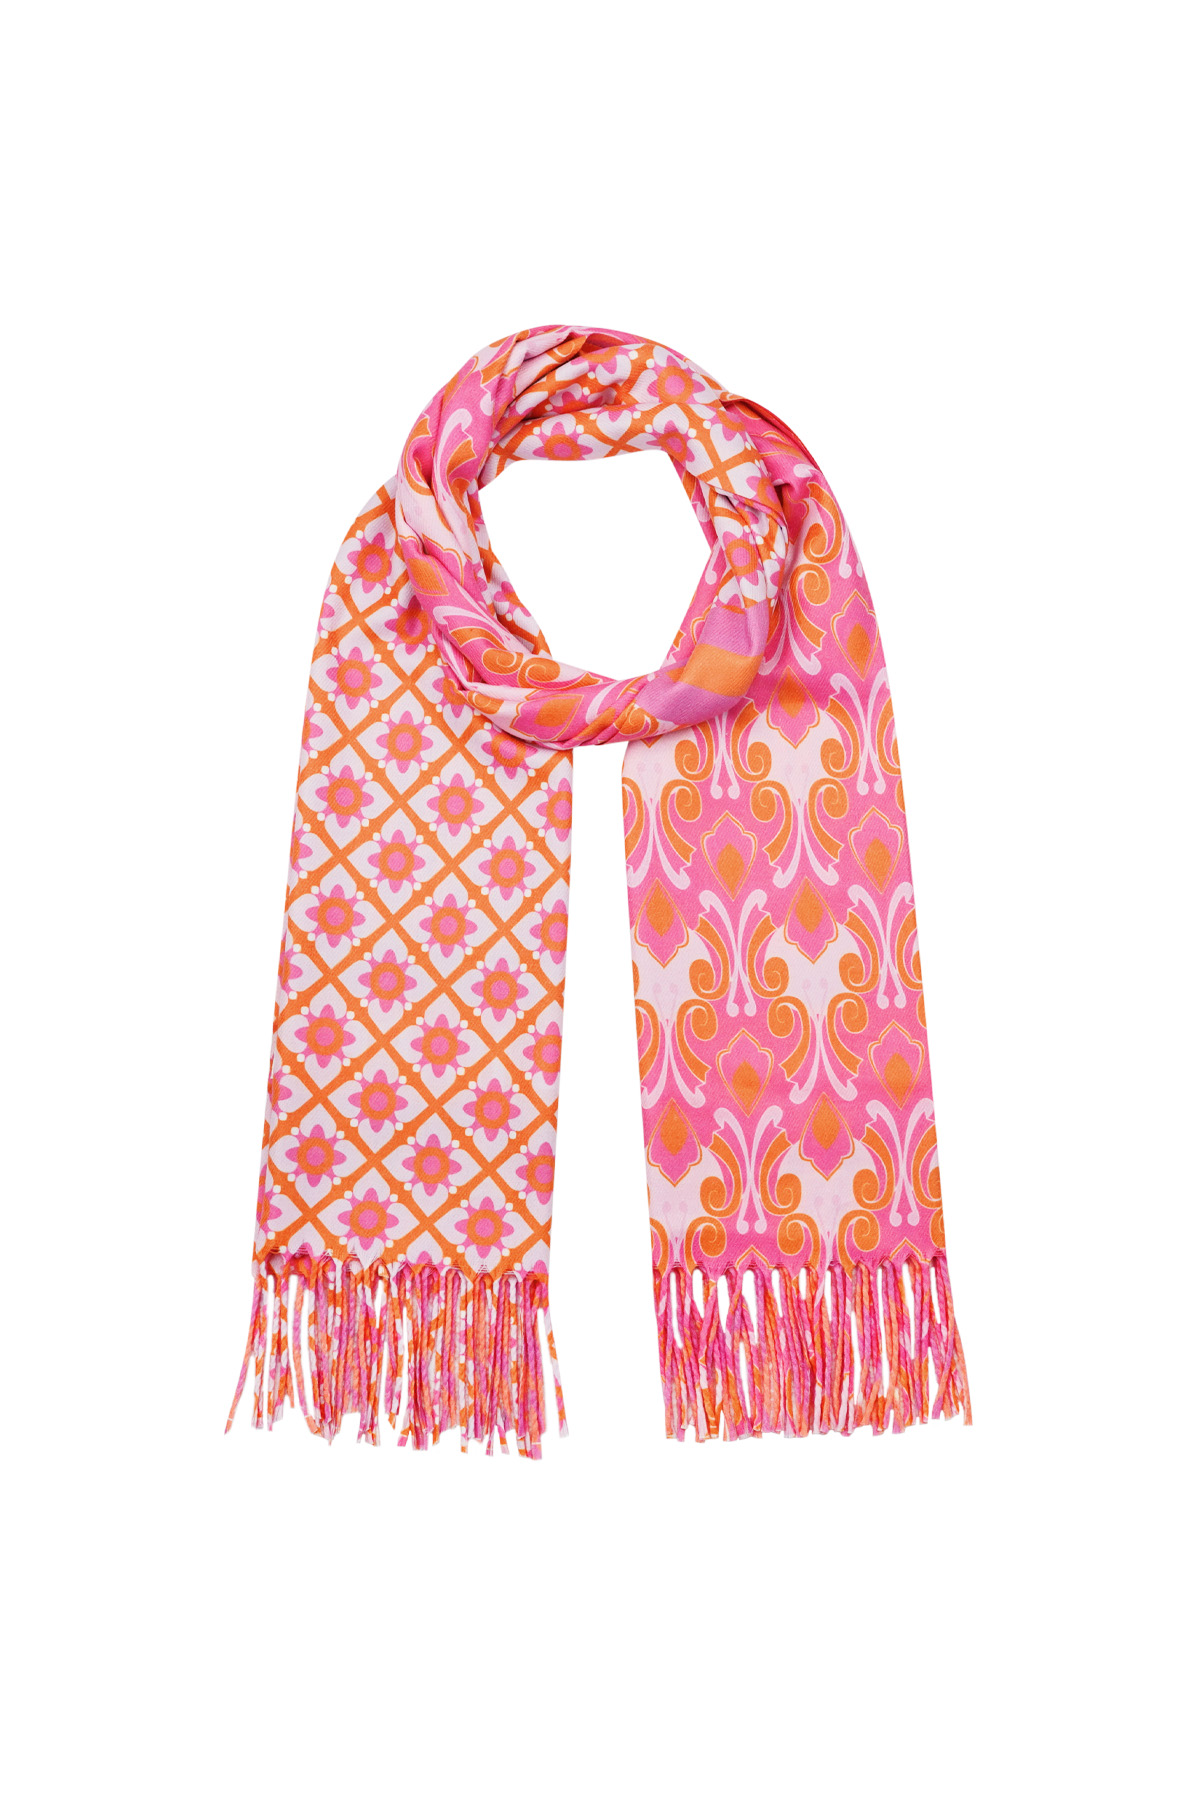 Duo foulard imprimé - rose-orange h5 Image2